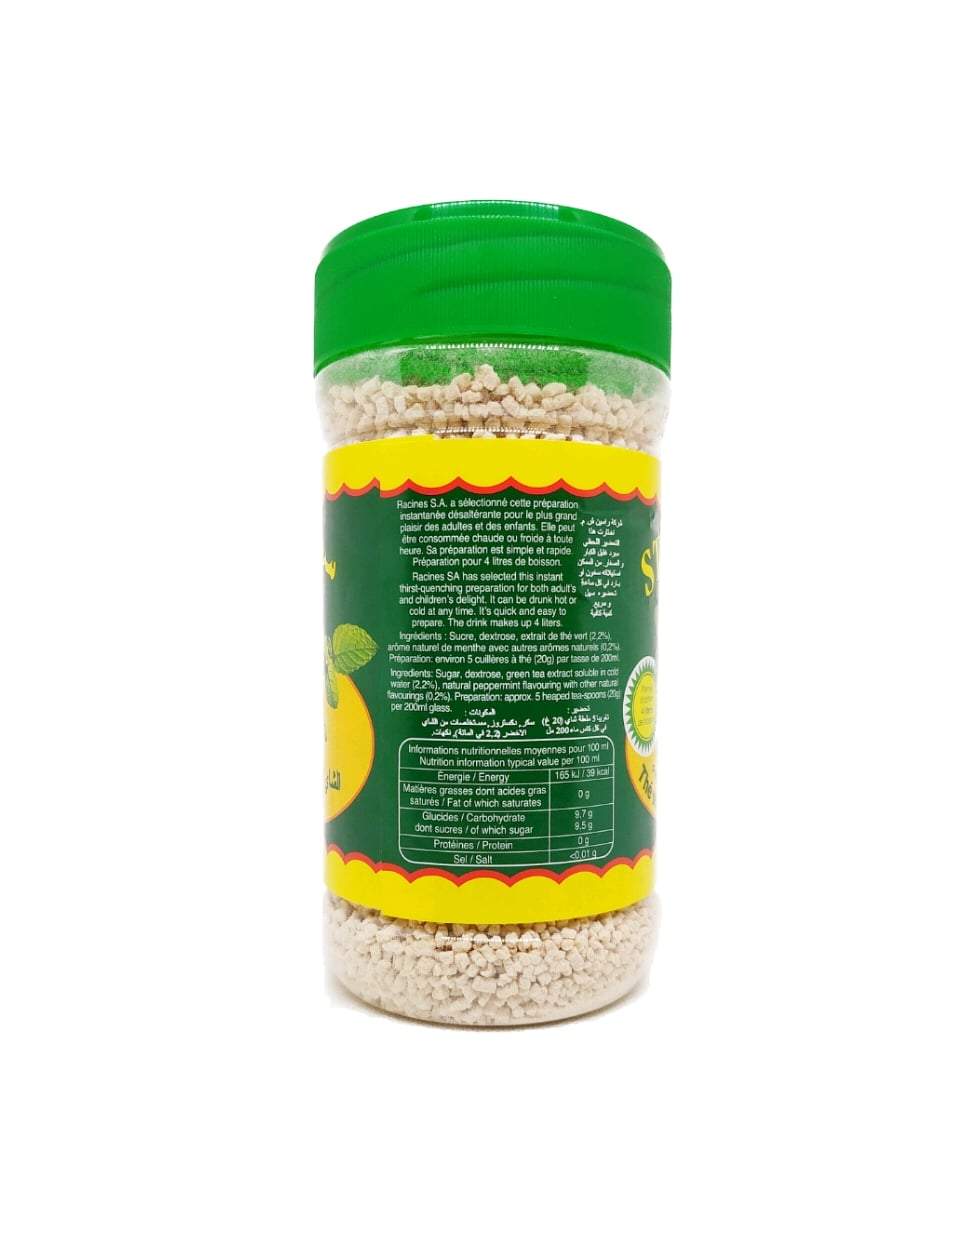 Produits orientaux en ligne: Starling - Thé vert à la menthe